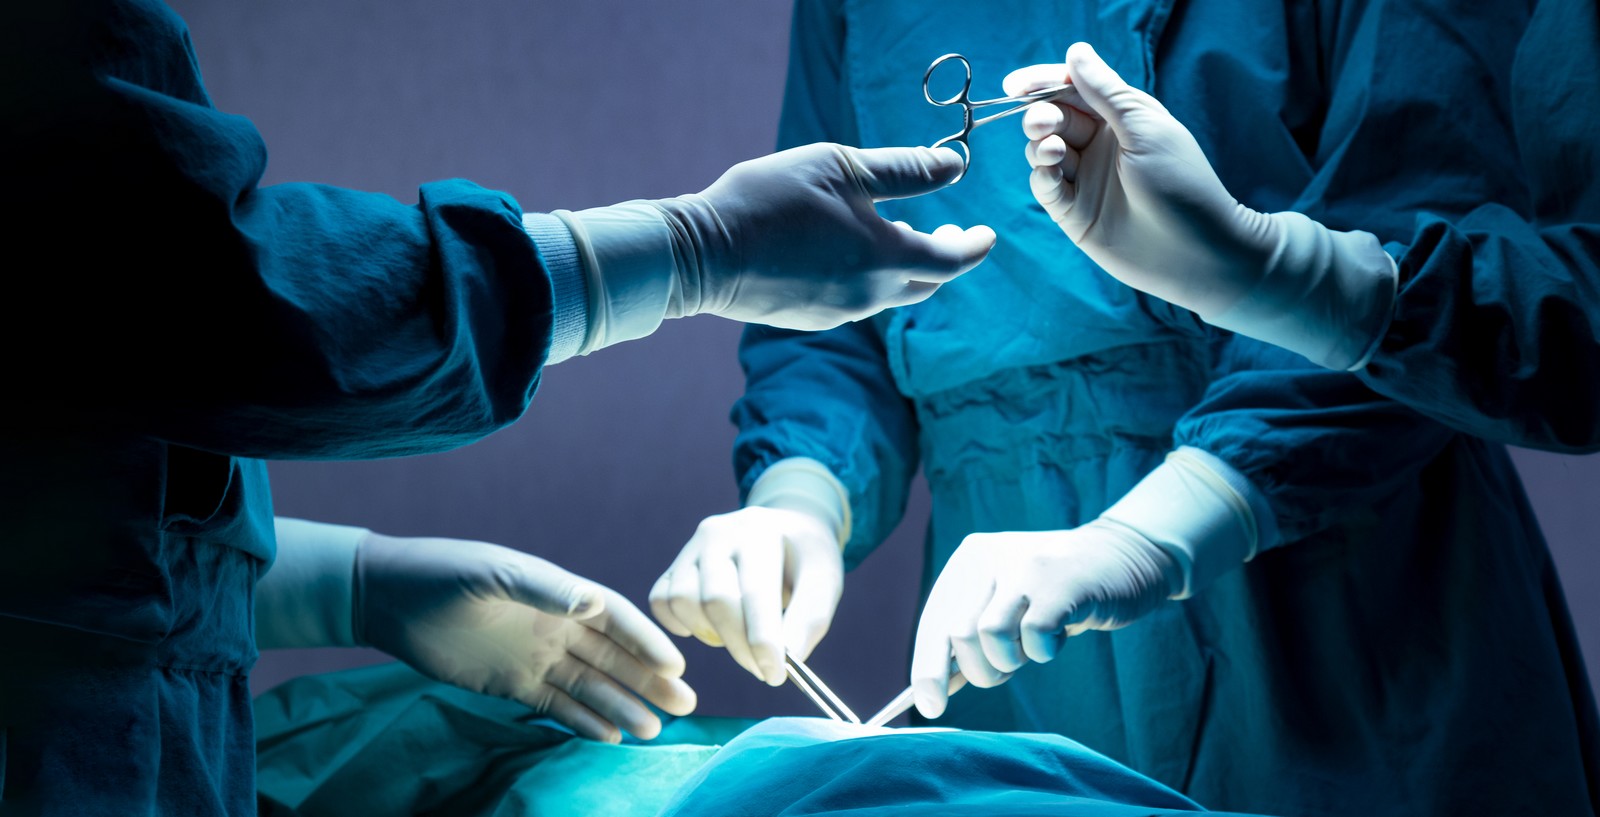 απογευματινά χειρουργεία: πώς οι γιατροί παίρνουν τον νόμο στα χέρια τους